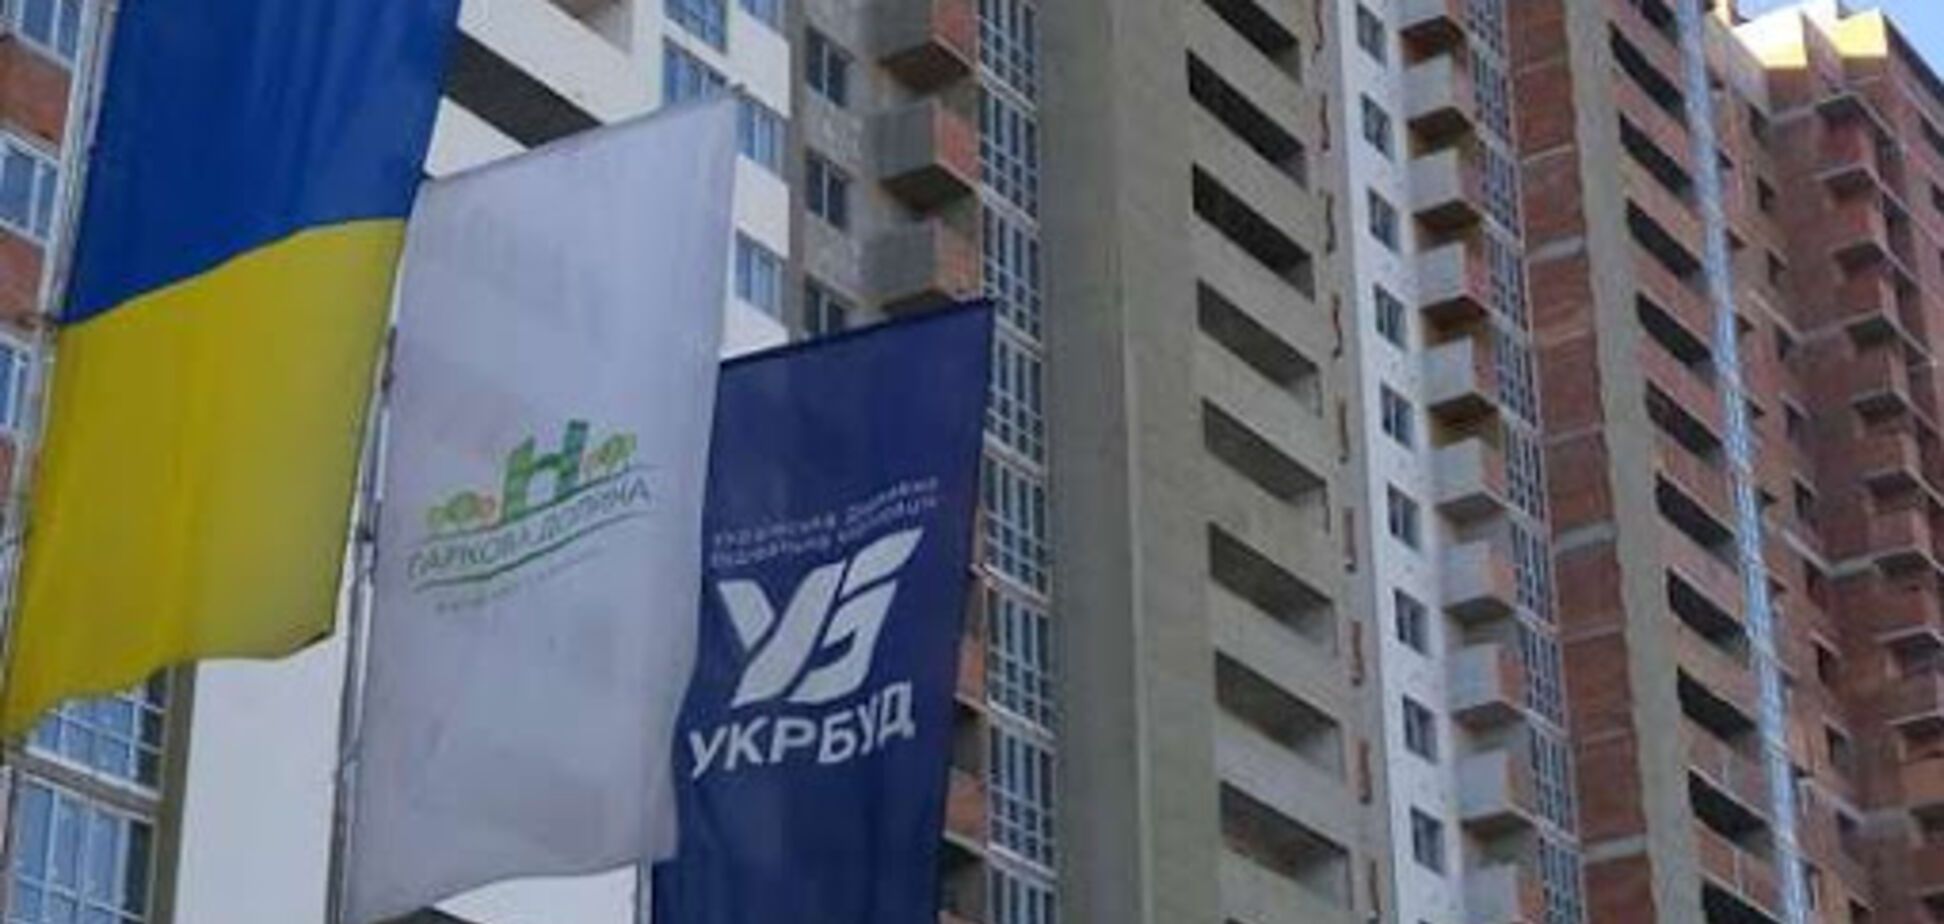 Дмитрий Исаенко про 'Укрбуд': общий 'минус' составляет около 2 миллиардов гривен